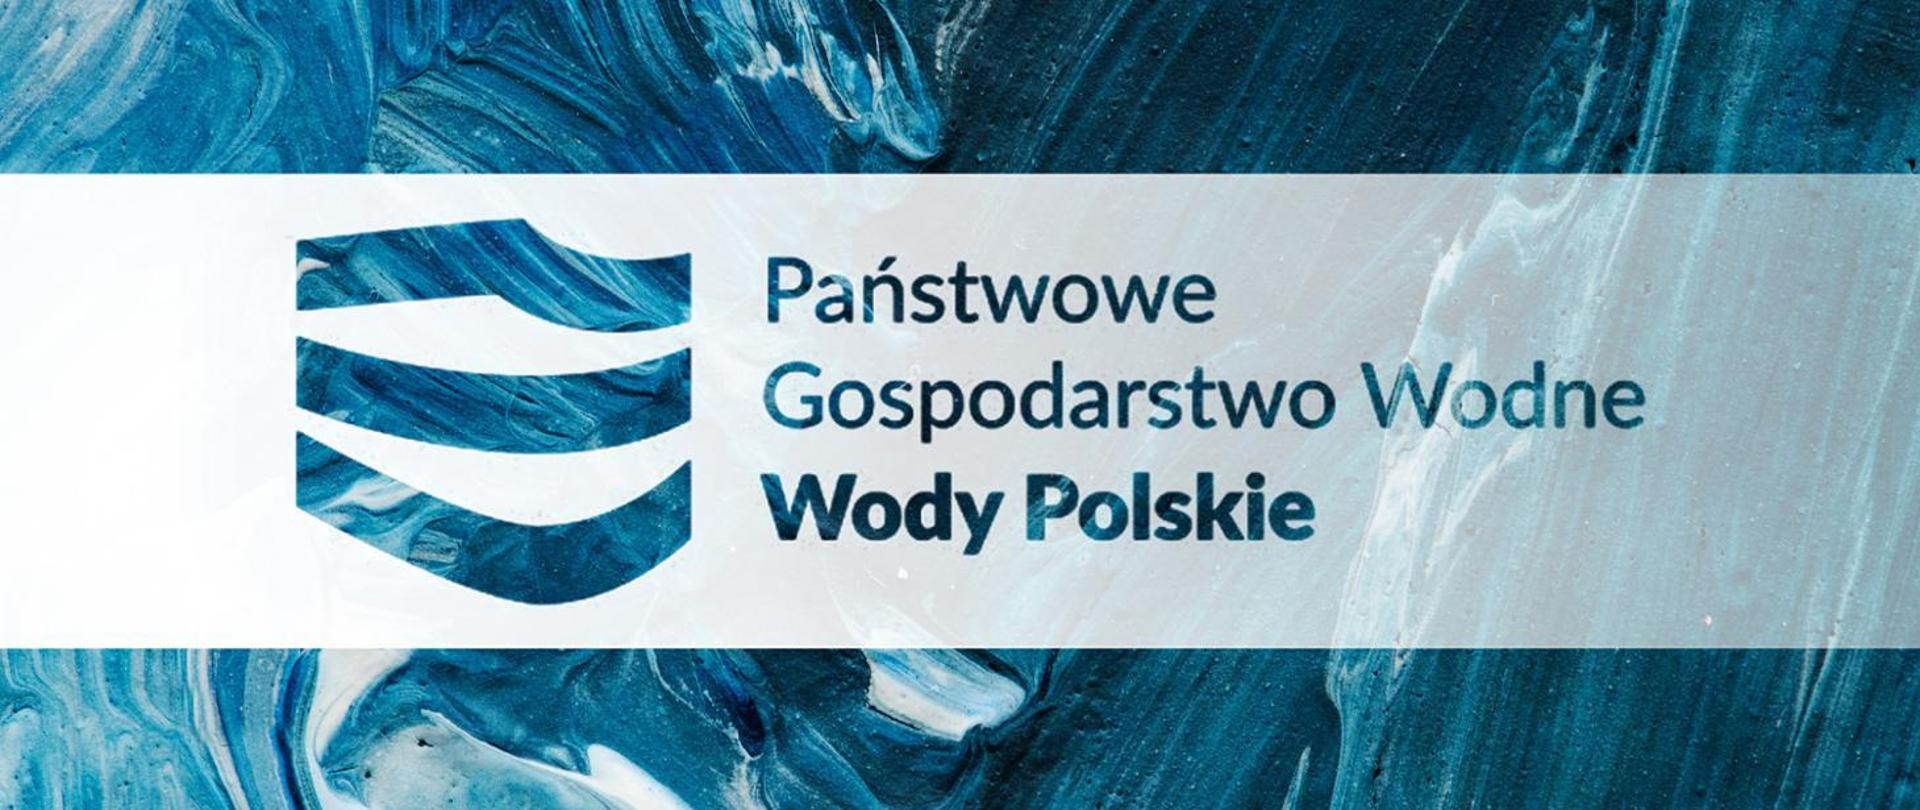 PGW Wody Polskie